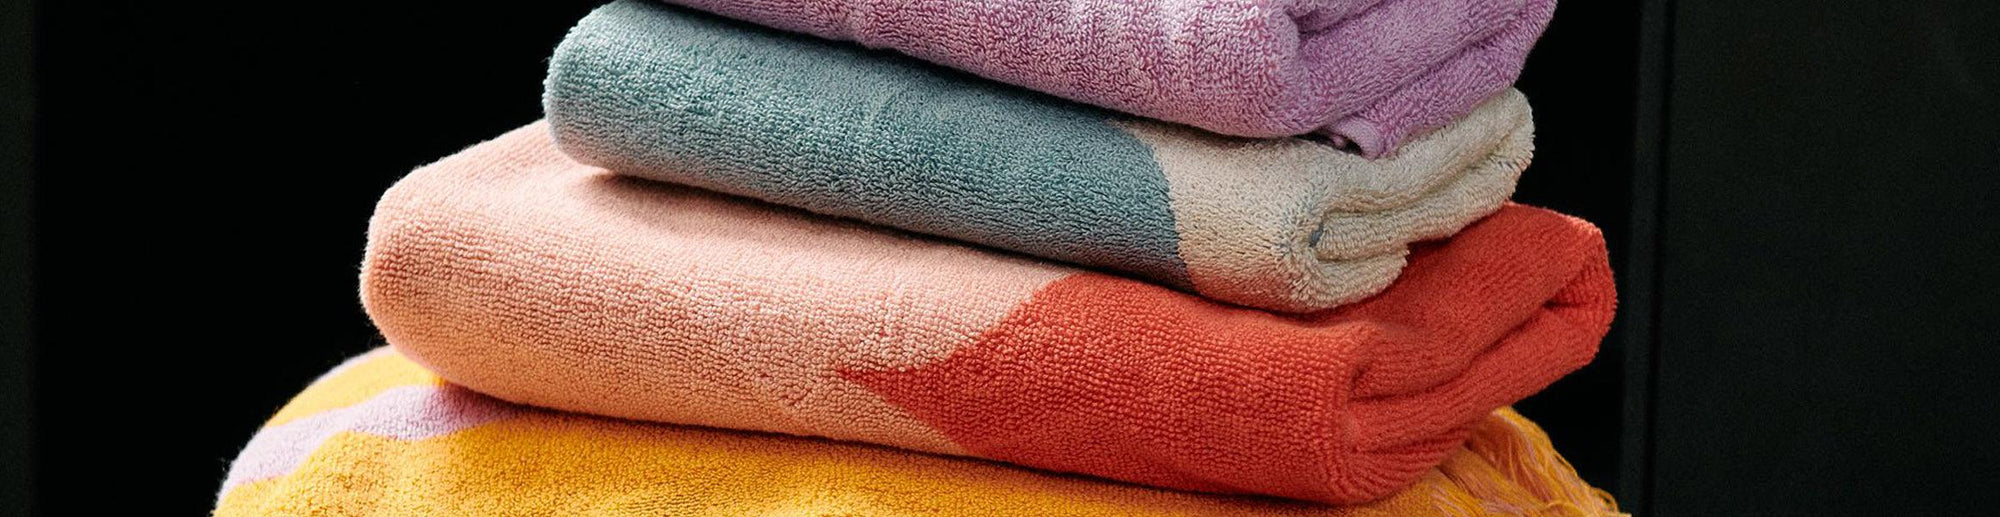 Bath Towels - Bolt of Cloth